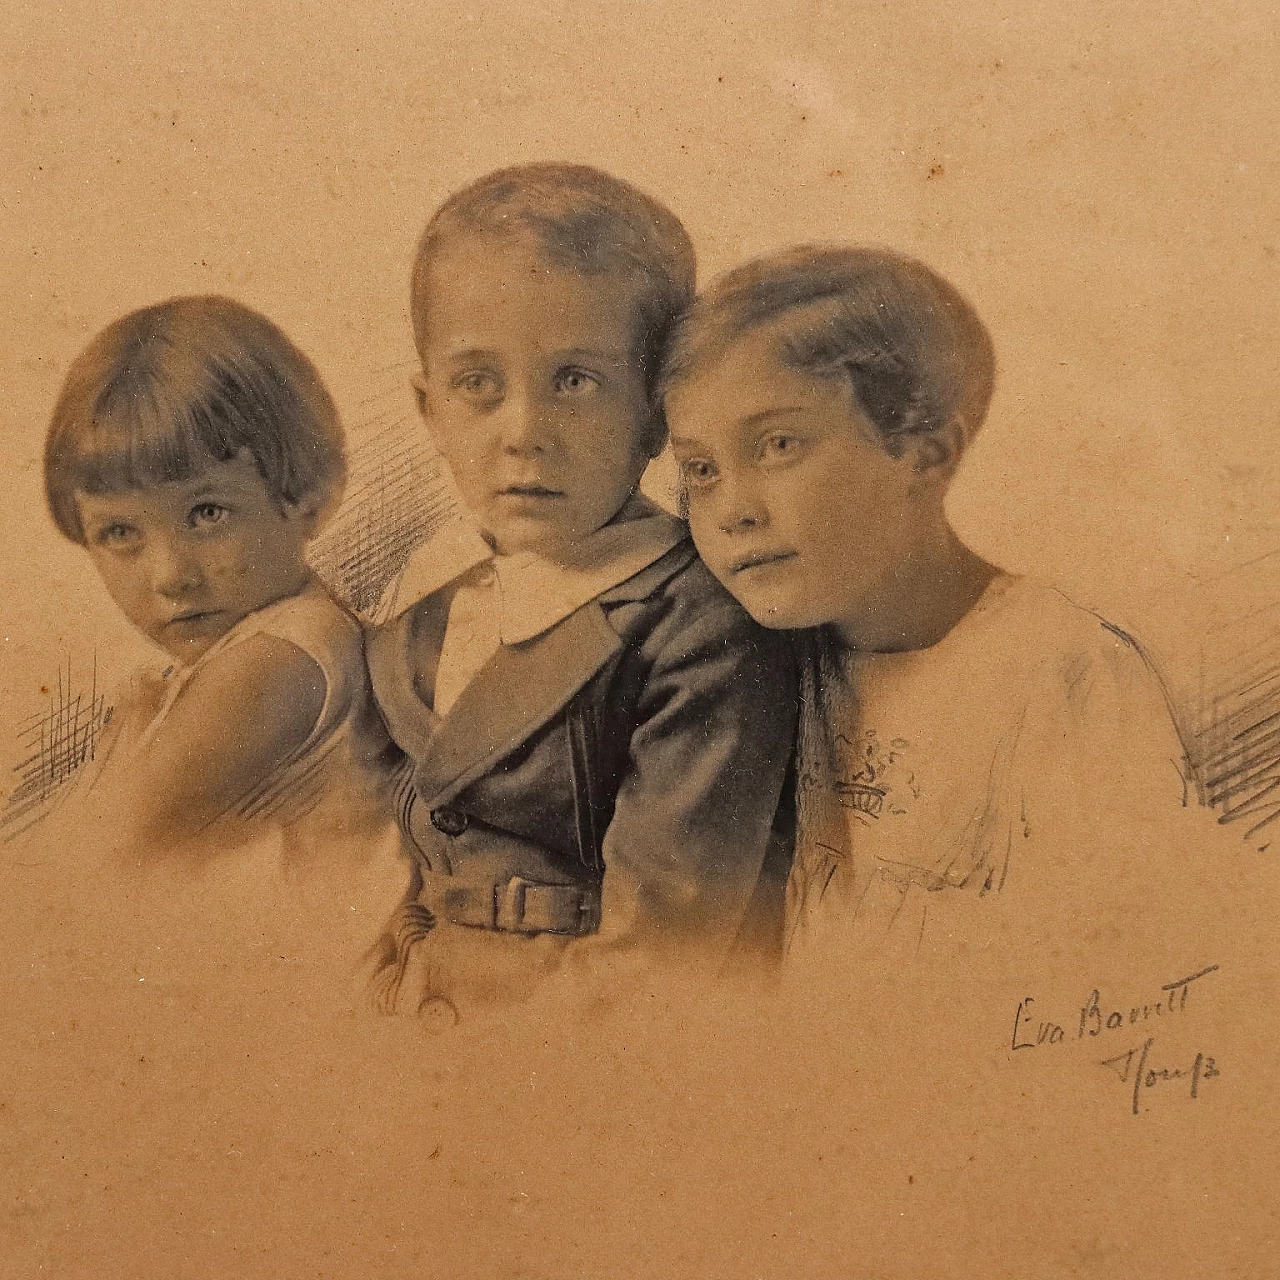 Eva Barrett, 4 ritratti di bambini, fotografie, 1930 6